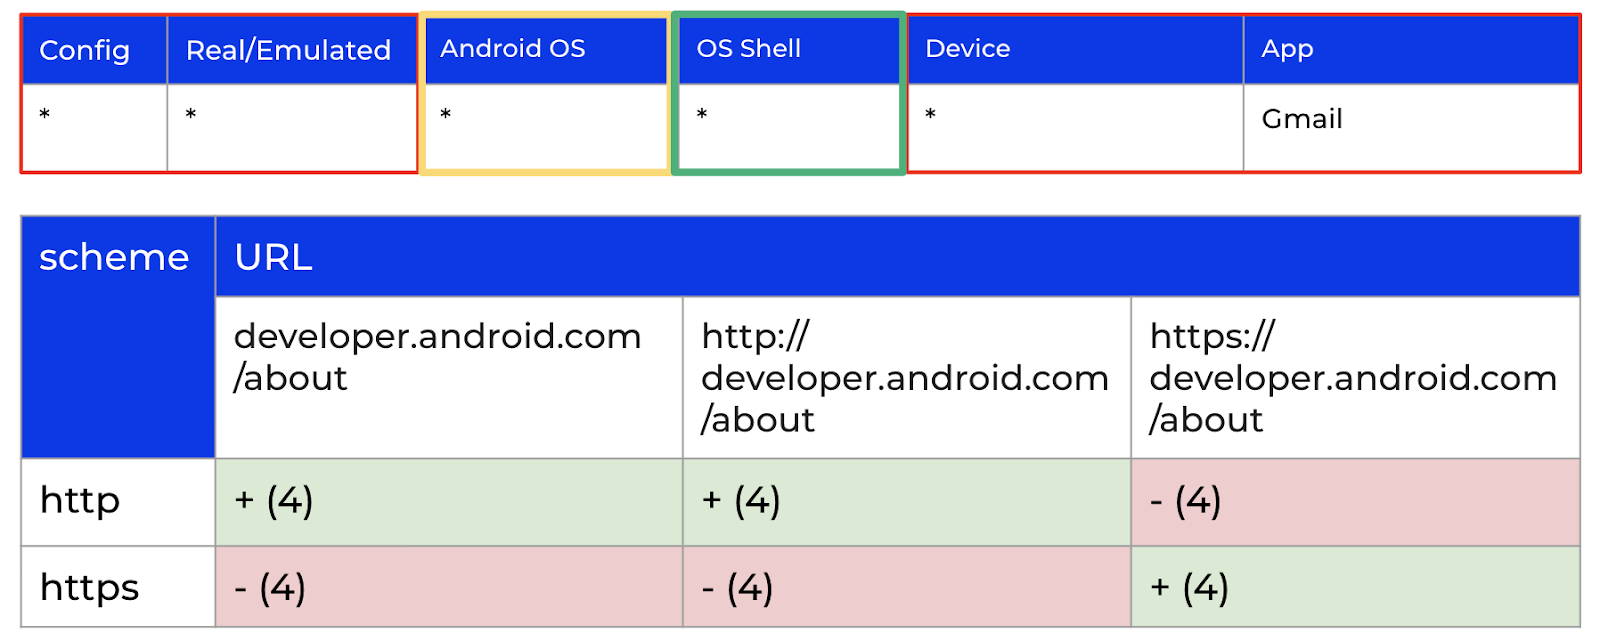 Результаты проверки гипотезы о влиянии оболочки Android ОС на стороннем приложении Gmail.
